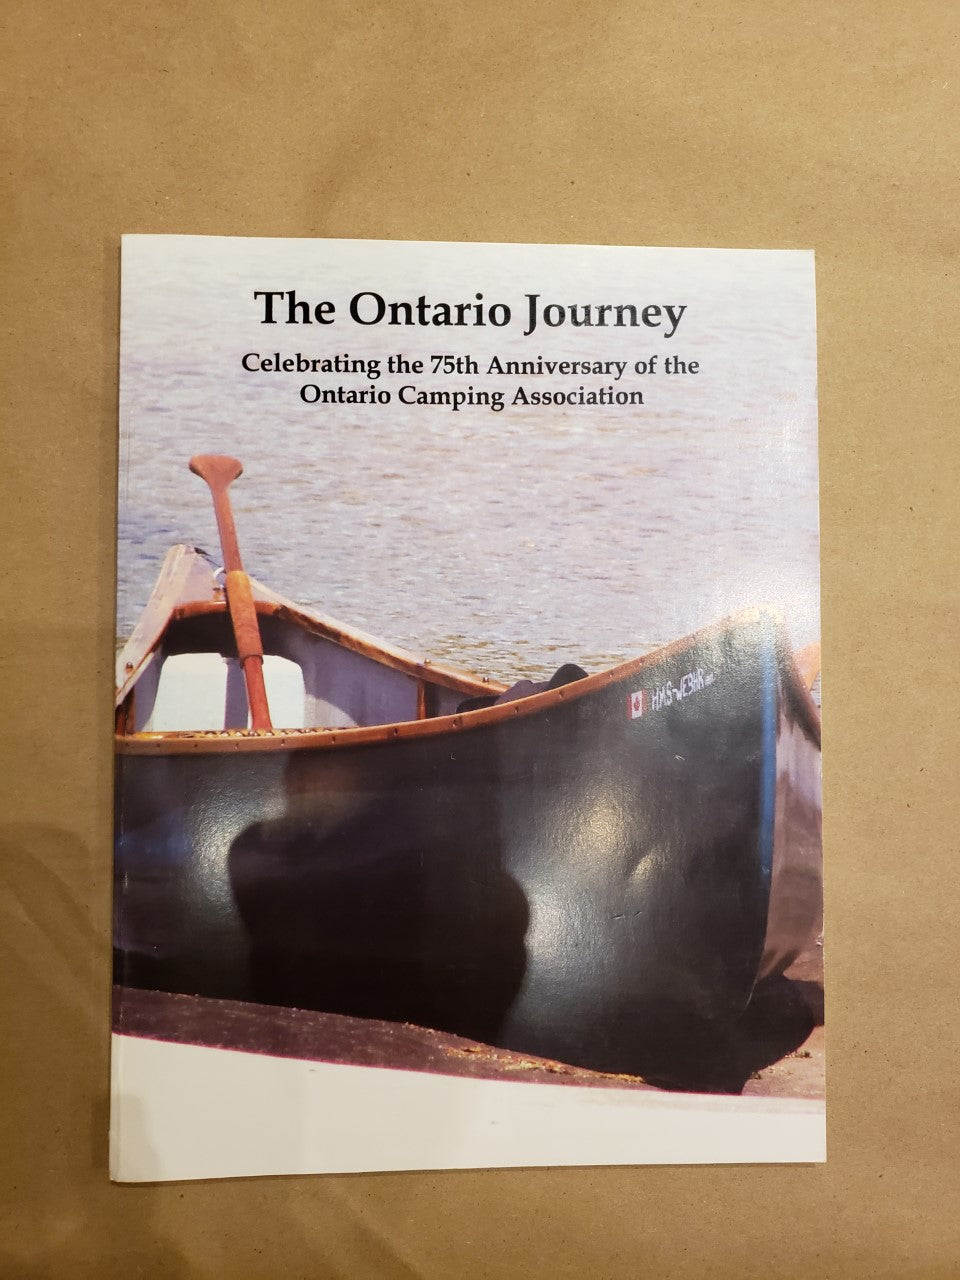 The Ontario Journey